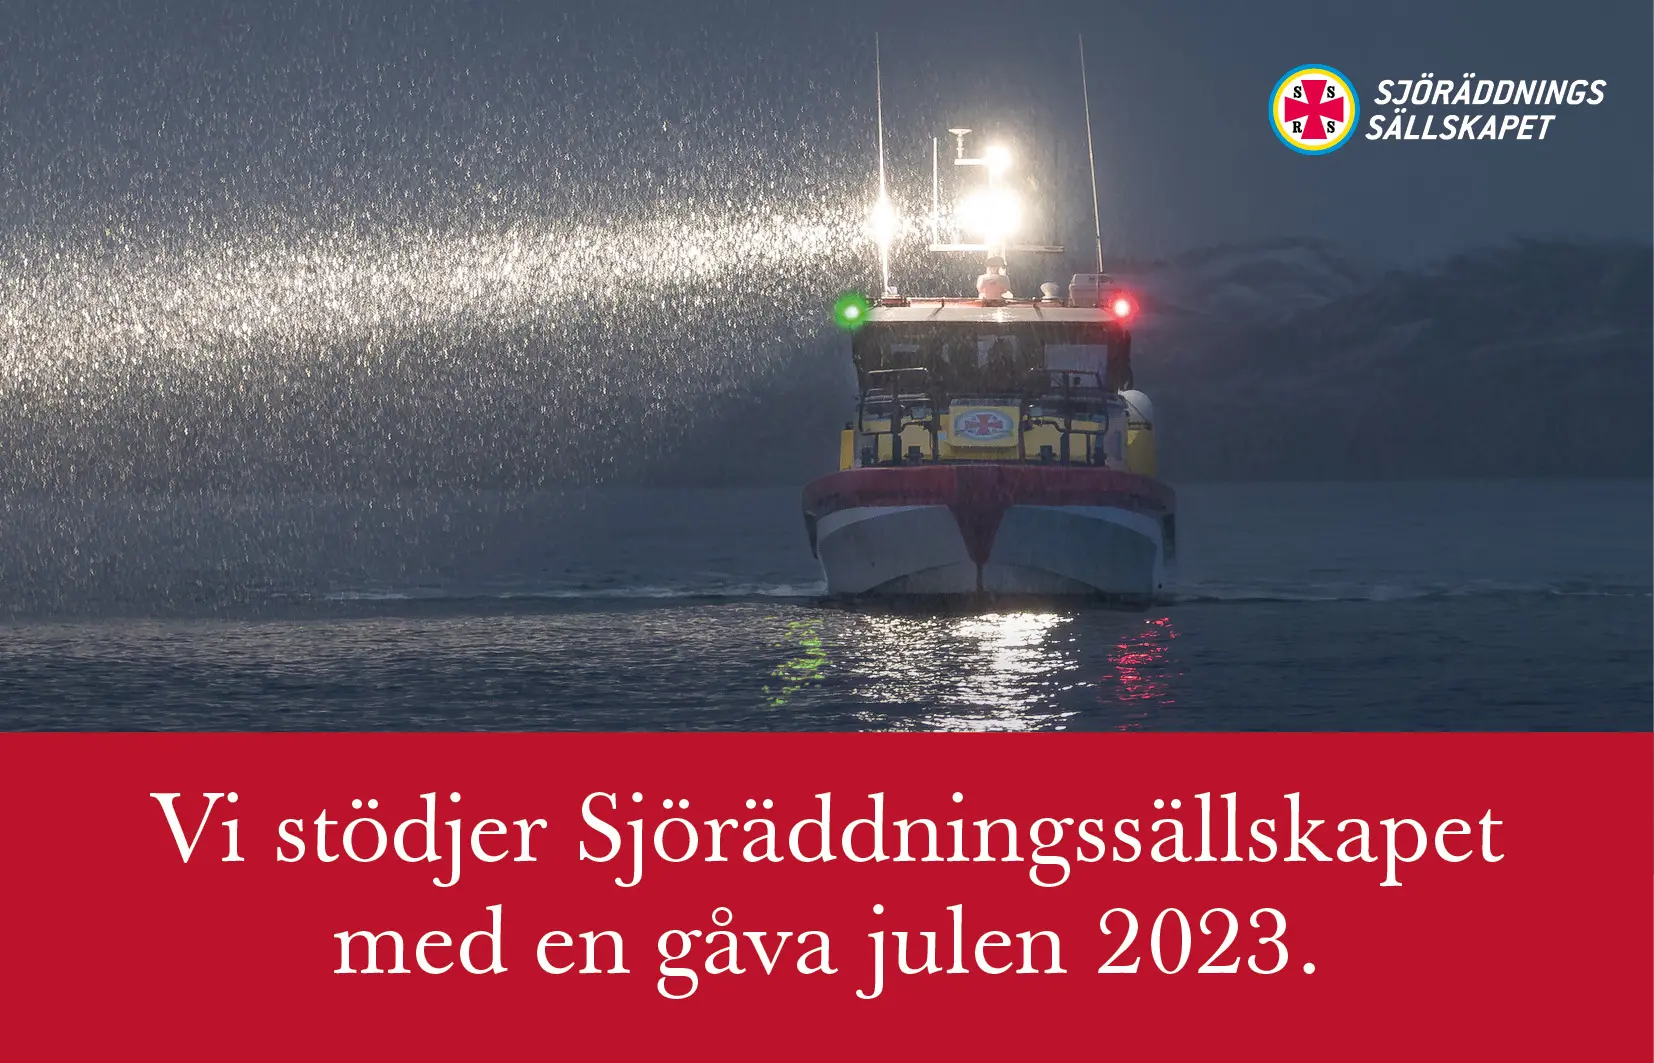 Vi stödjer Sjöräddningsällskapet med en gåva julen 2023.